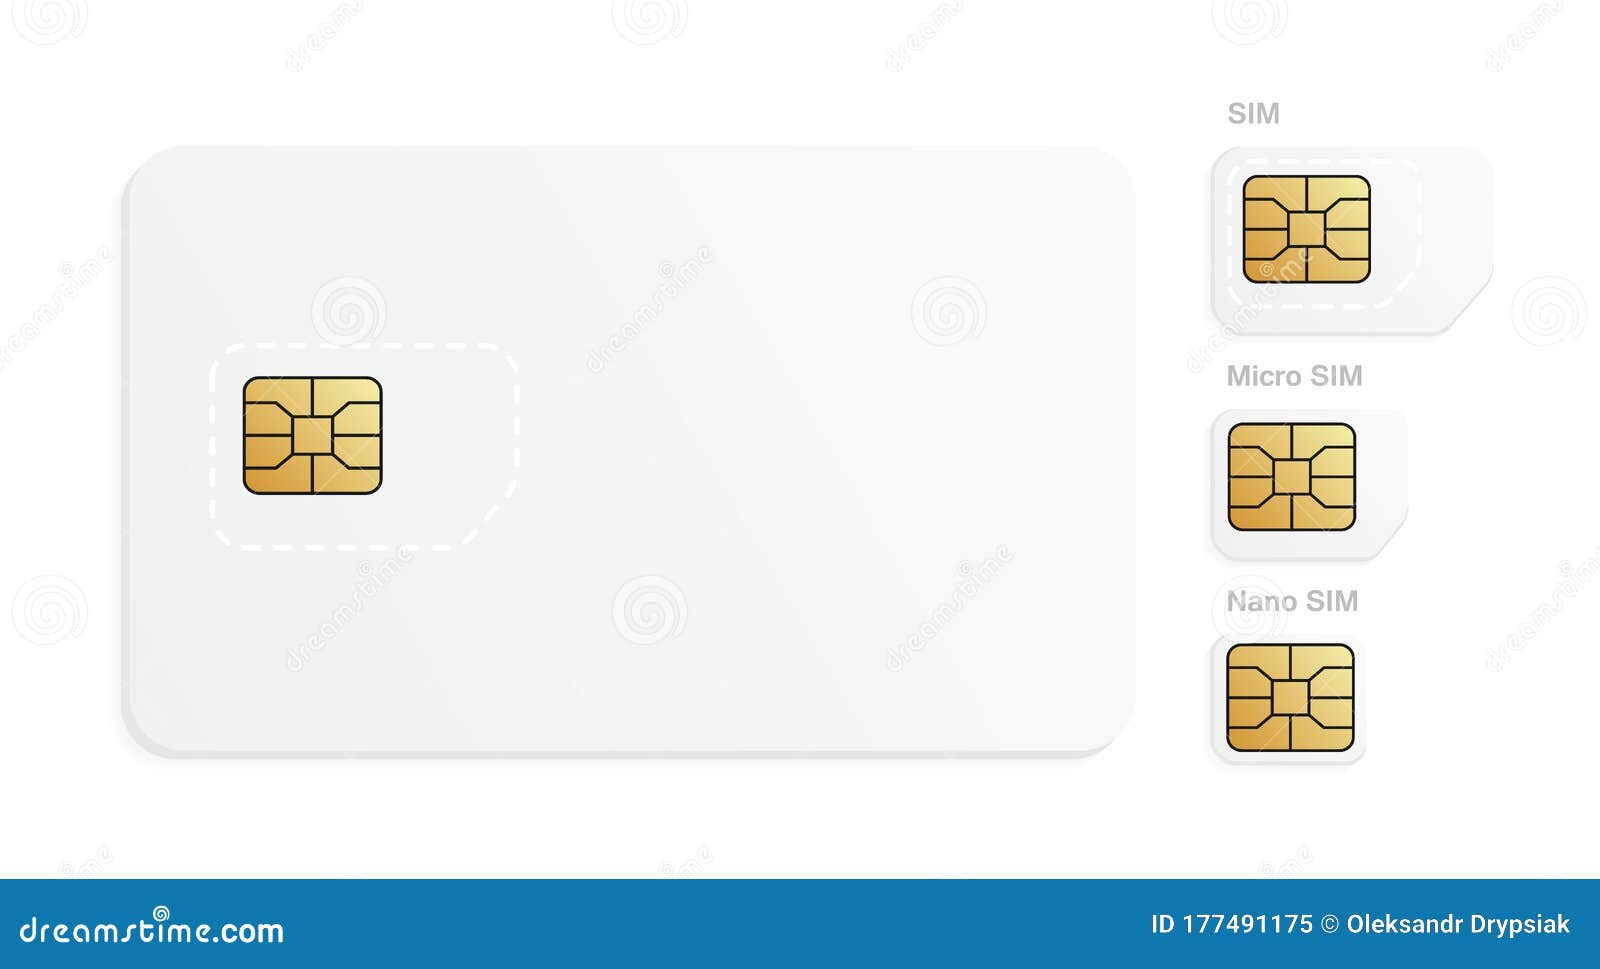 物联卡和手机卡有什么区别，再来看看他们都长什么样子？_物联网+-搜卡之家